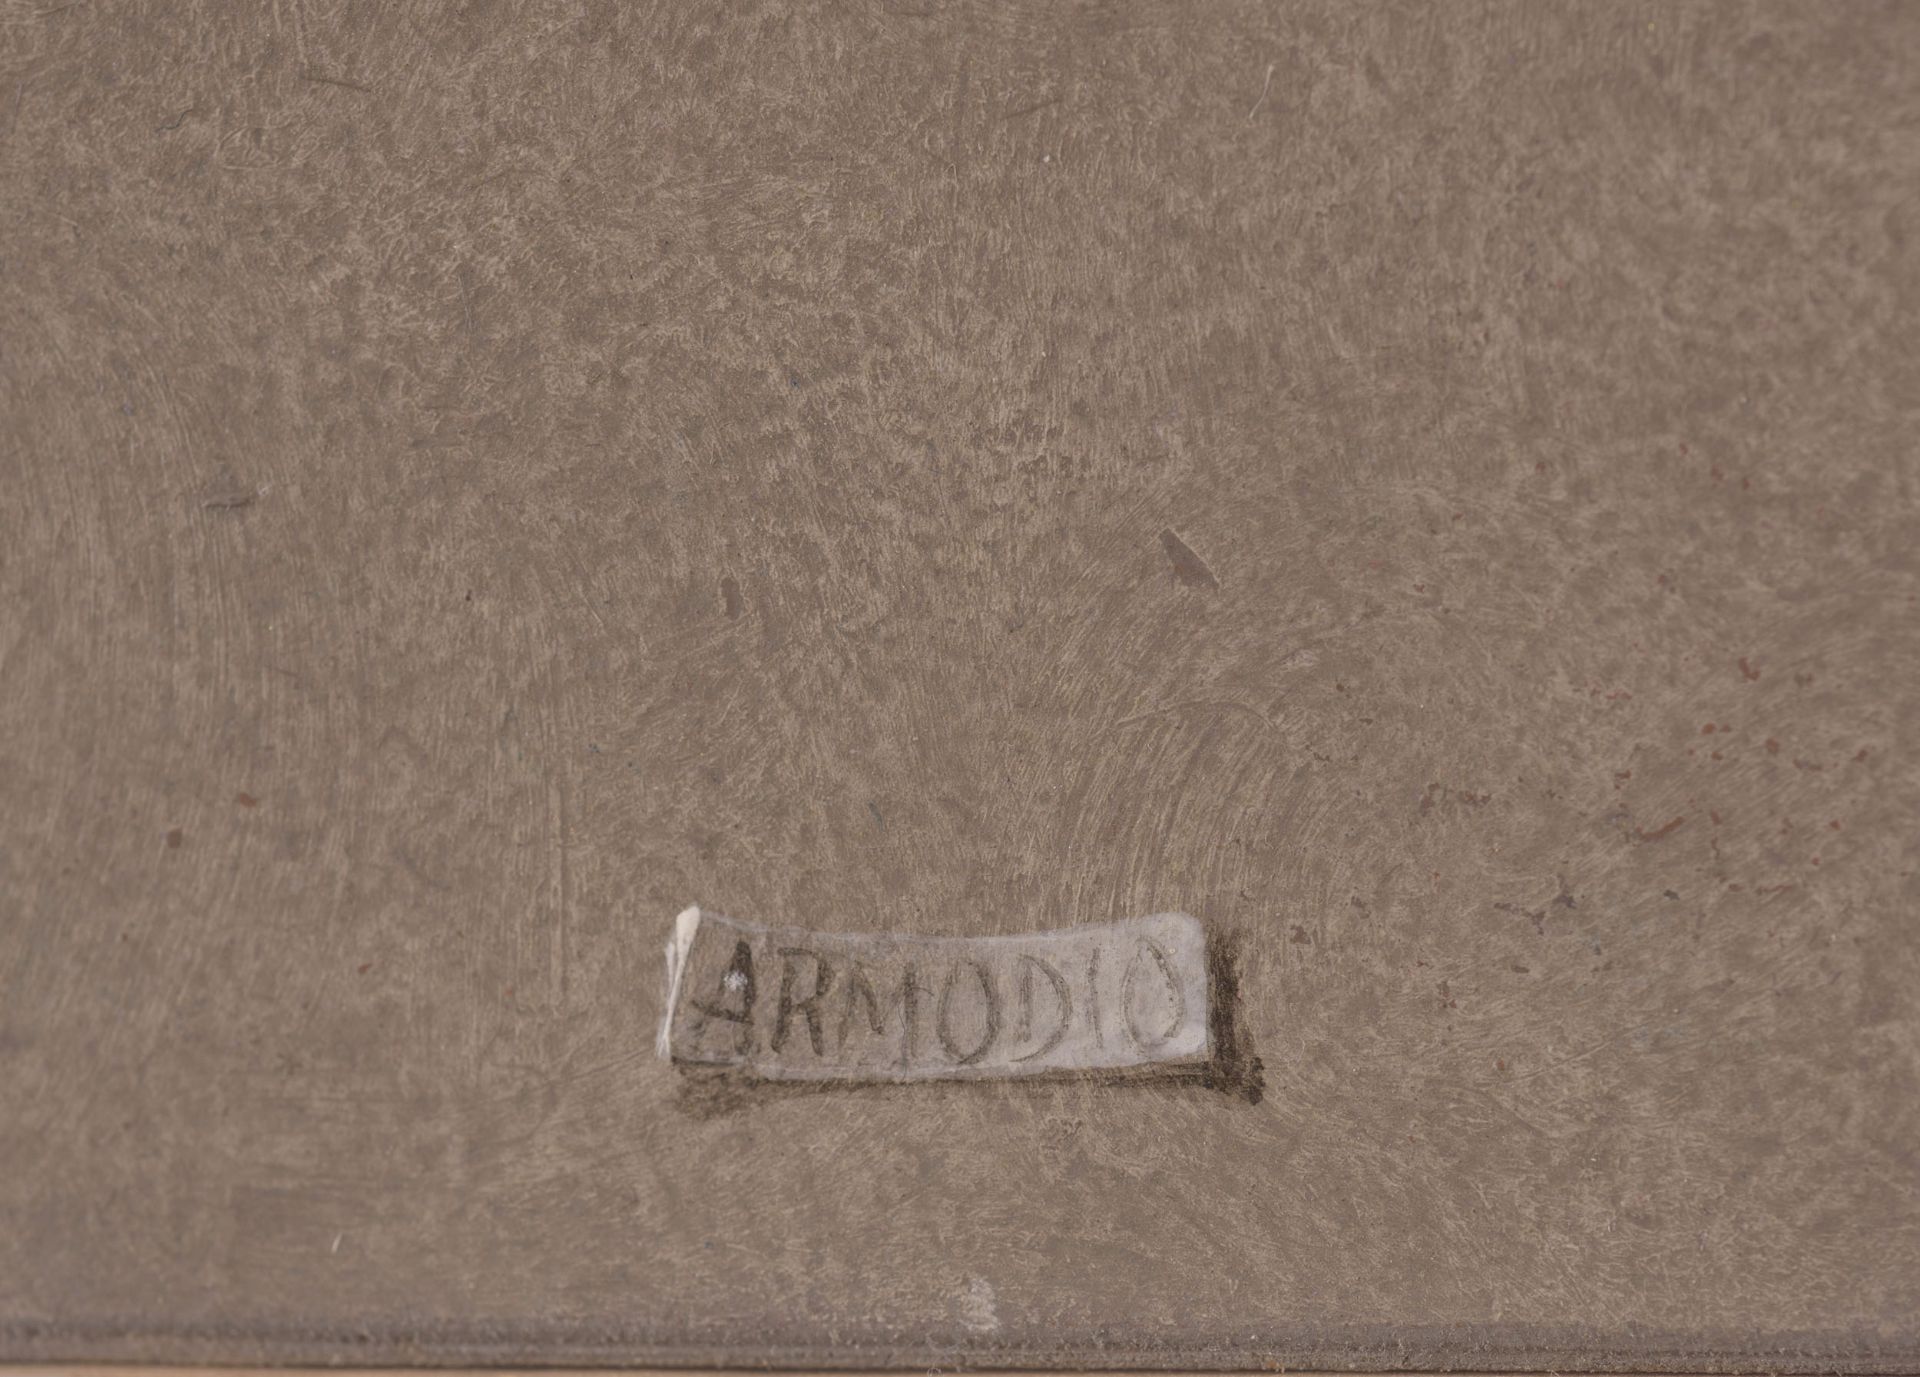 ARMODIO - Bild 4 aus 4